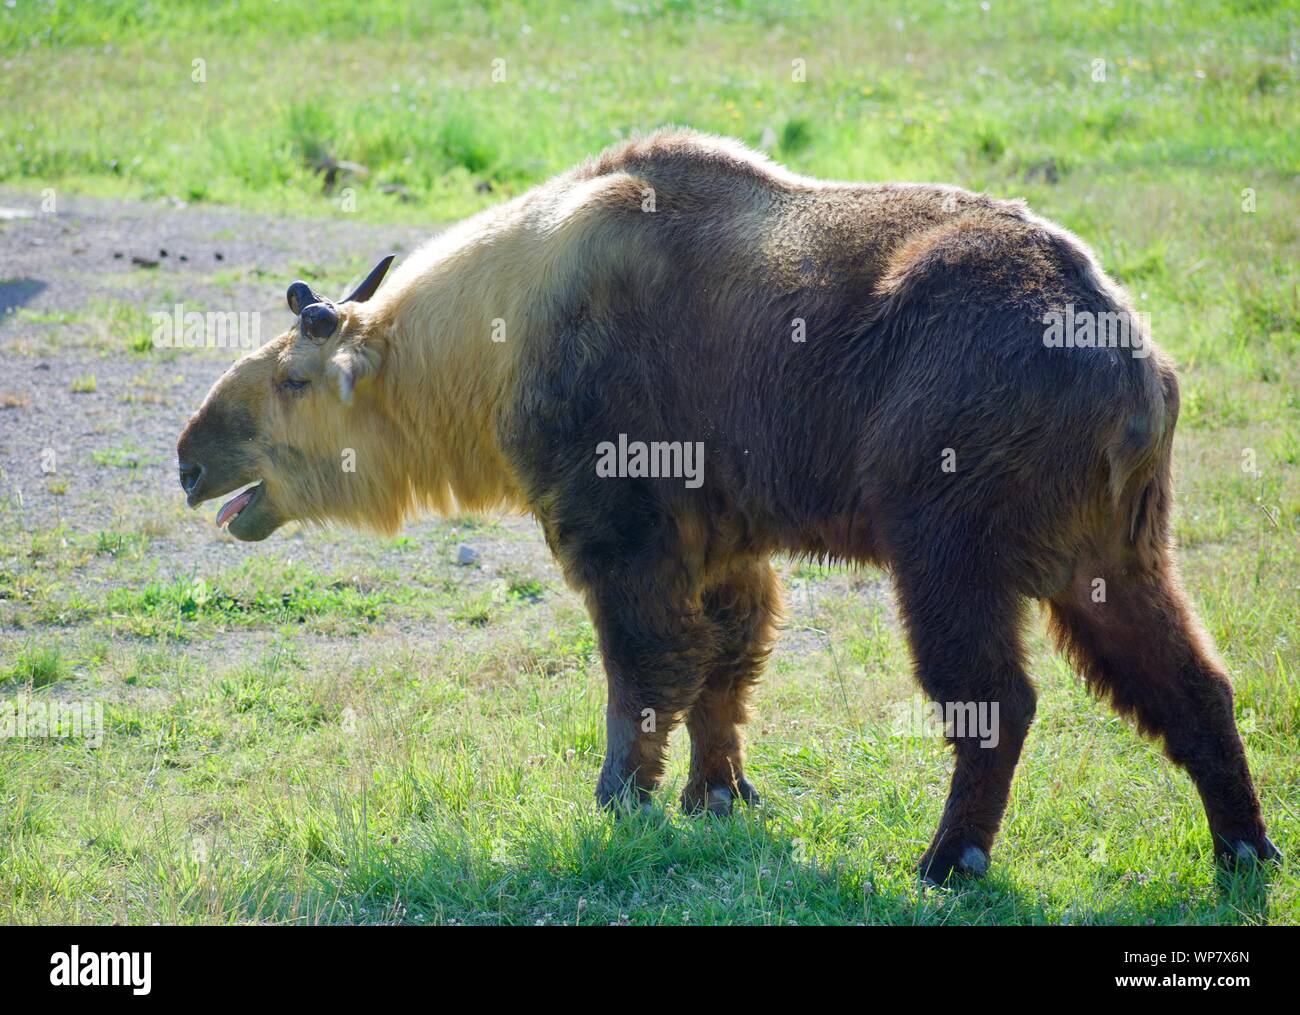 Sichuan Takin getrennt in das Feld ein. Budorcas taxicolor tibetana ist ein Schaf oder Ziege - wie Säugetier aus Westeuropa, China. Ist eine Erhaltung bedrohter Arten Stockfoto